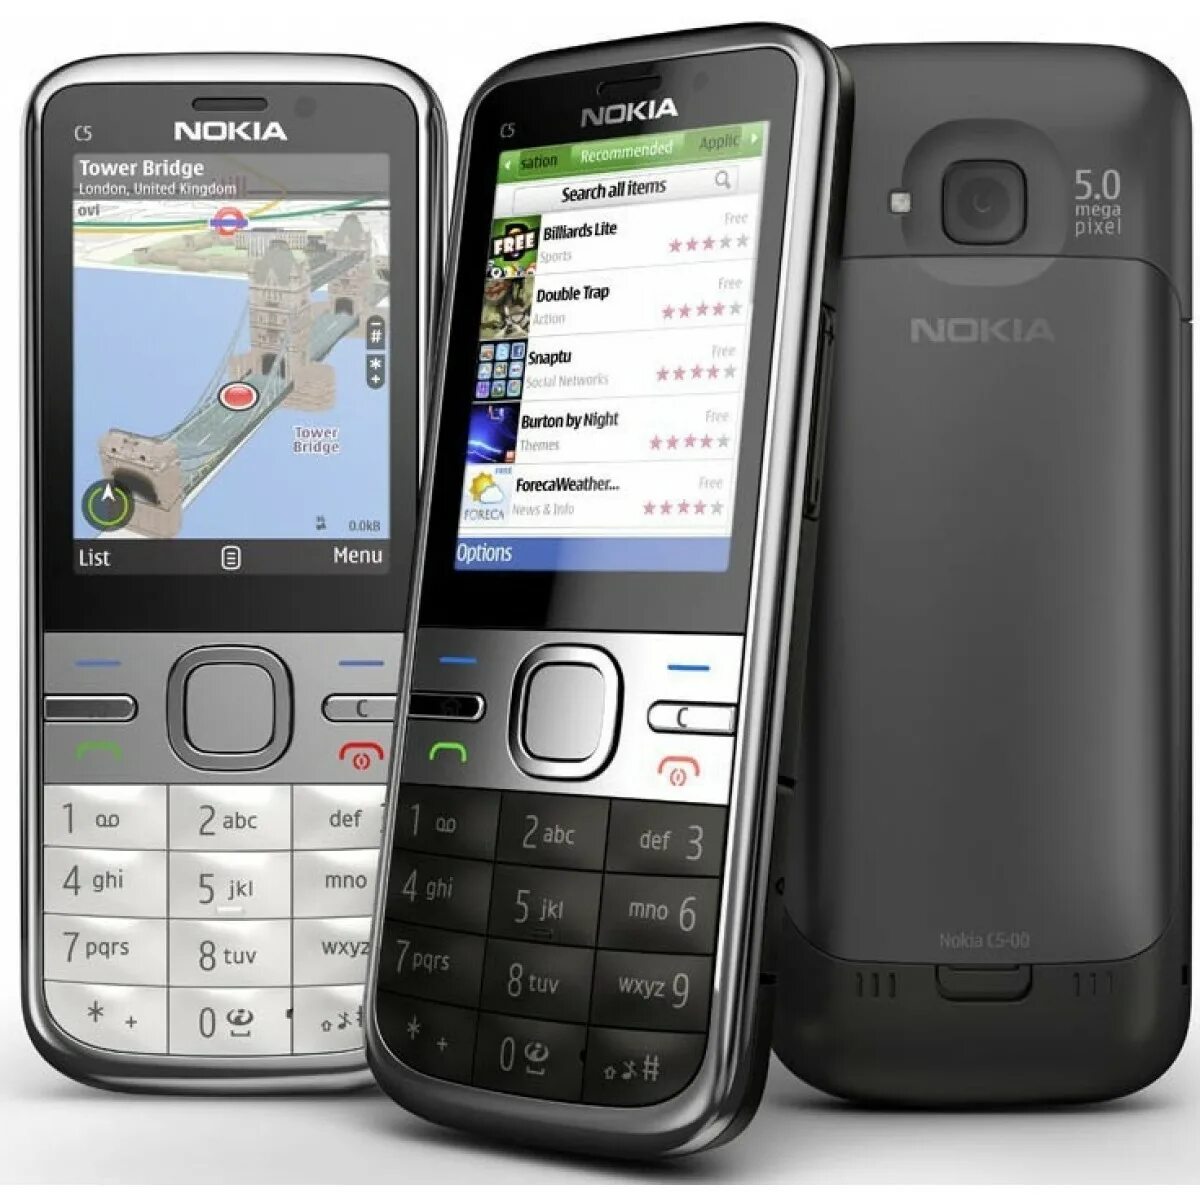 Модели телефонов нокиа кнопочные фото. Нокиа c5 00. Nokia c5-00 RM-645. Nokia c5-01. Nokia c5-00.2.